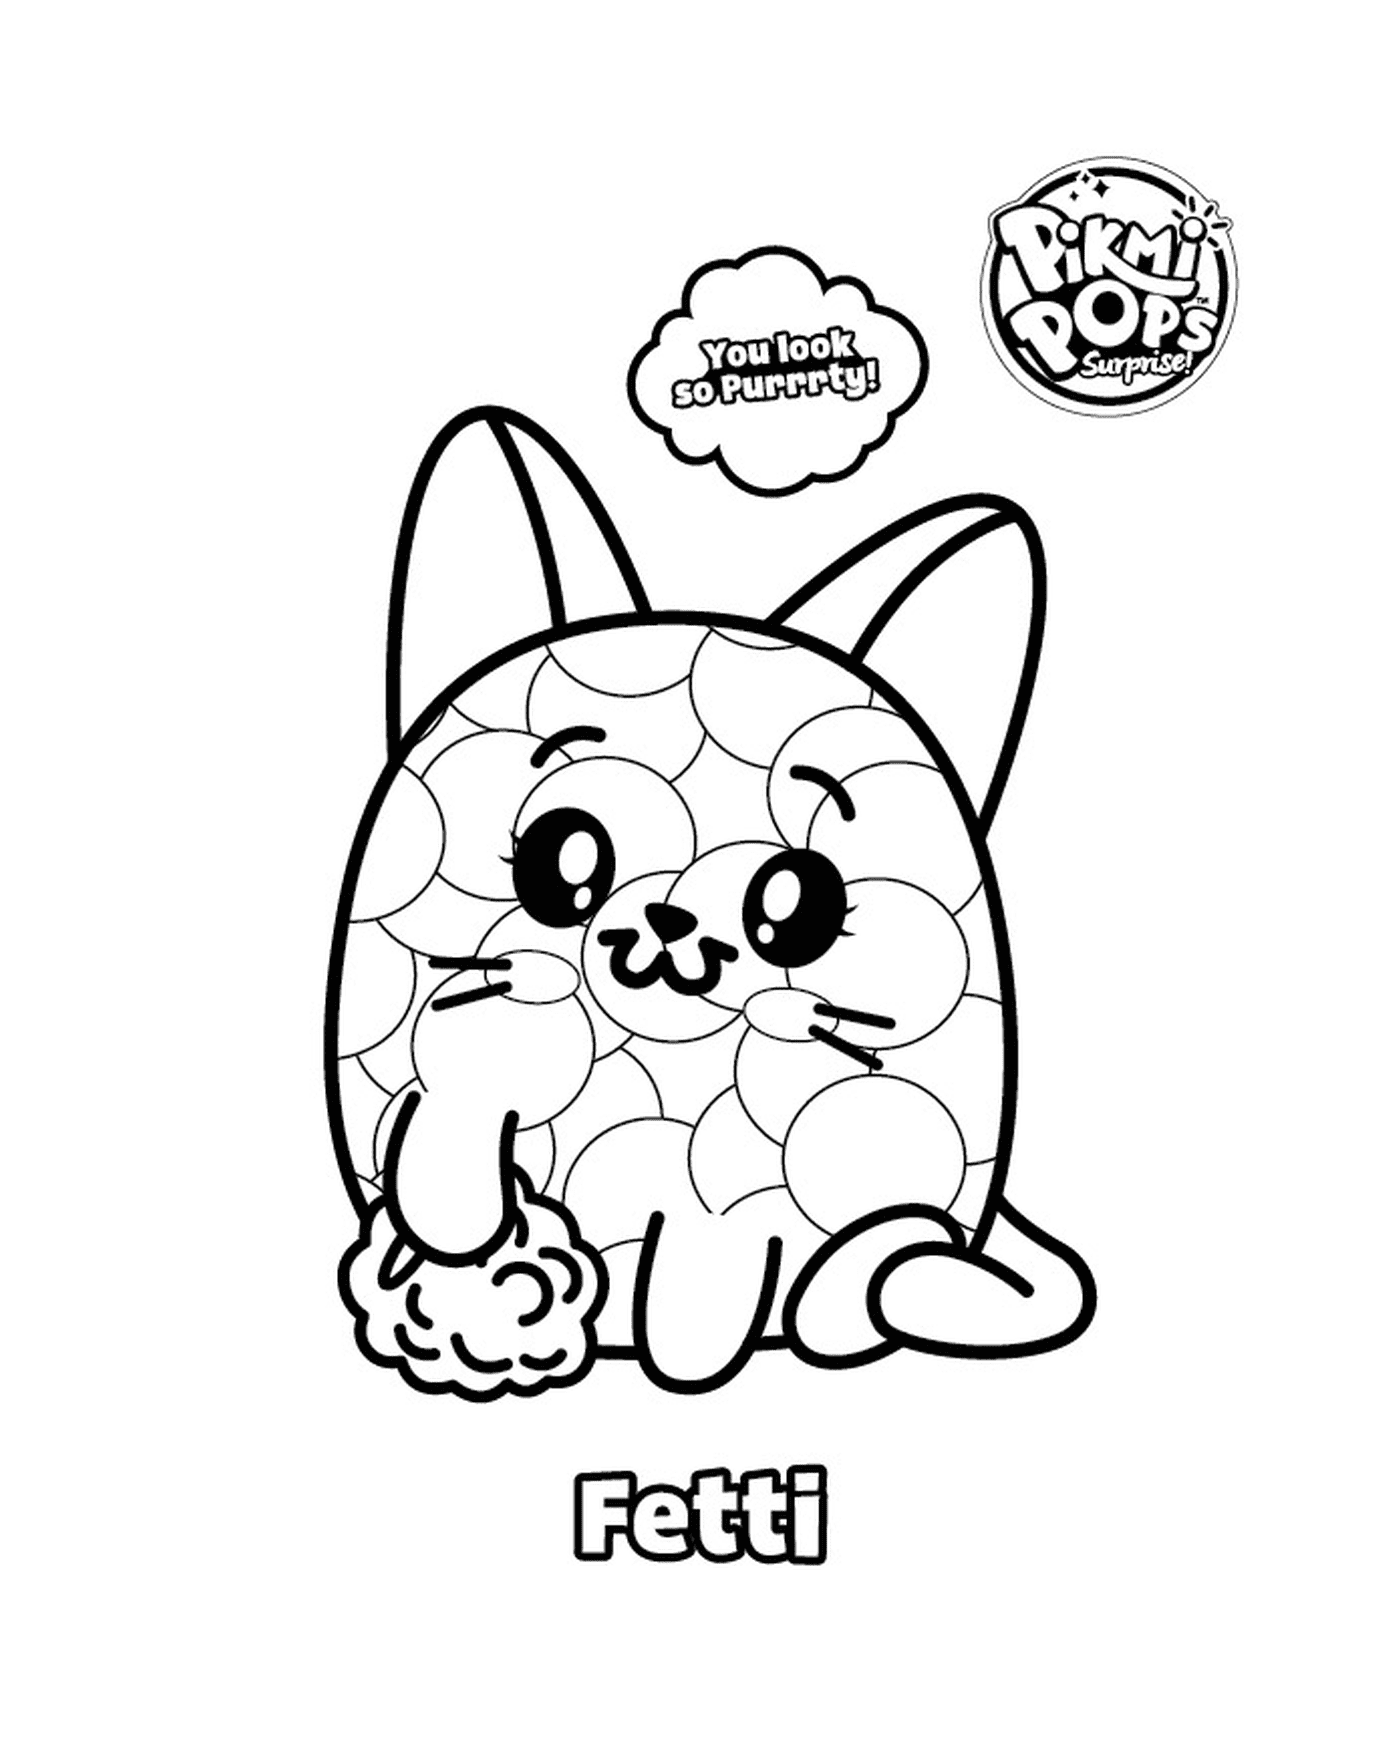  Pikmi Pop con un gato llamado Fetti 